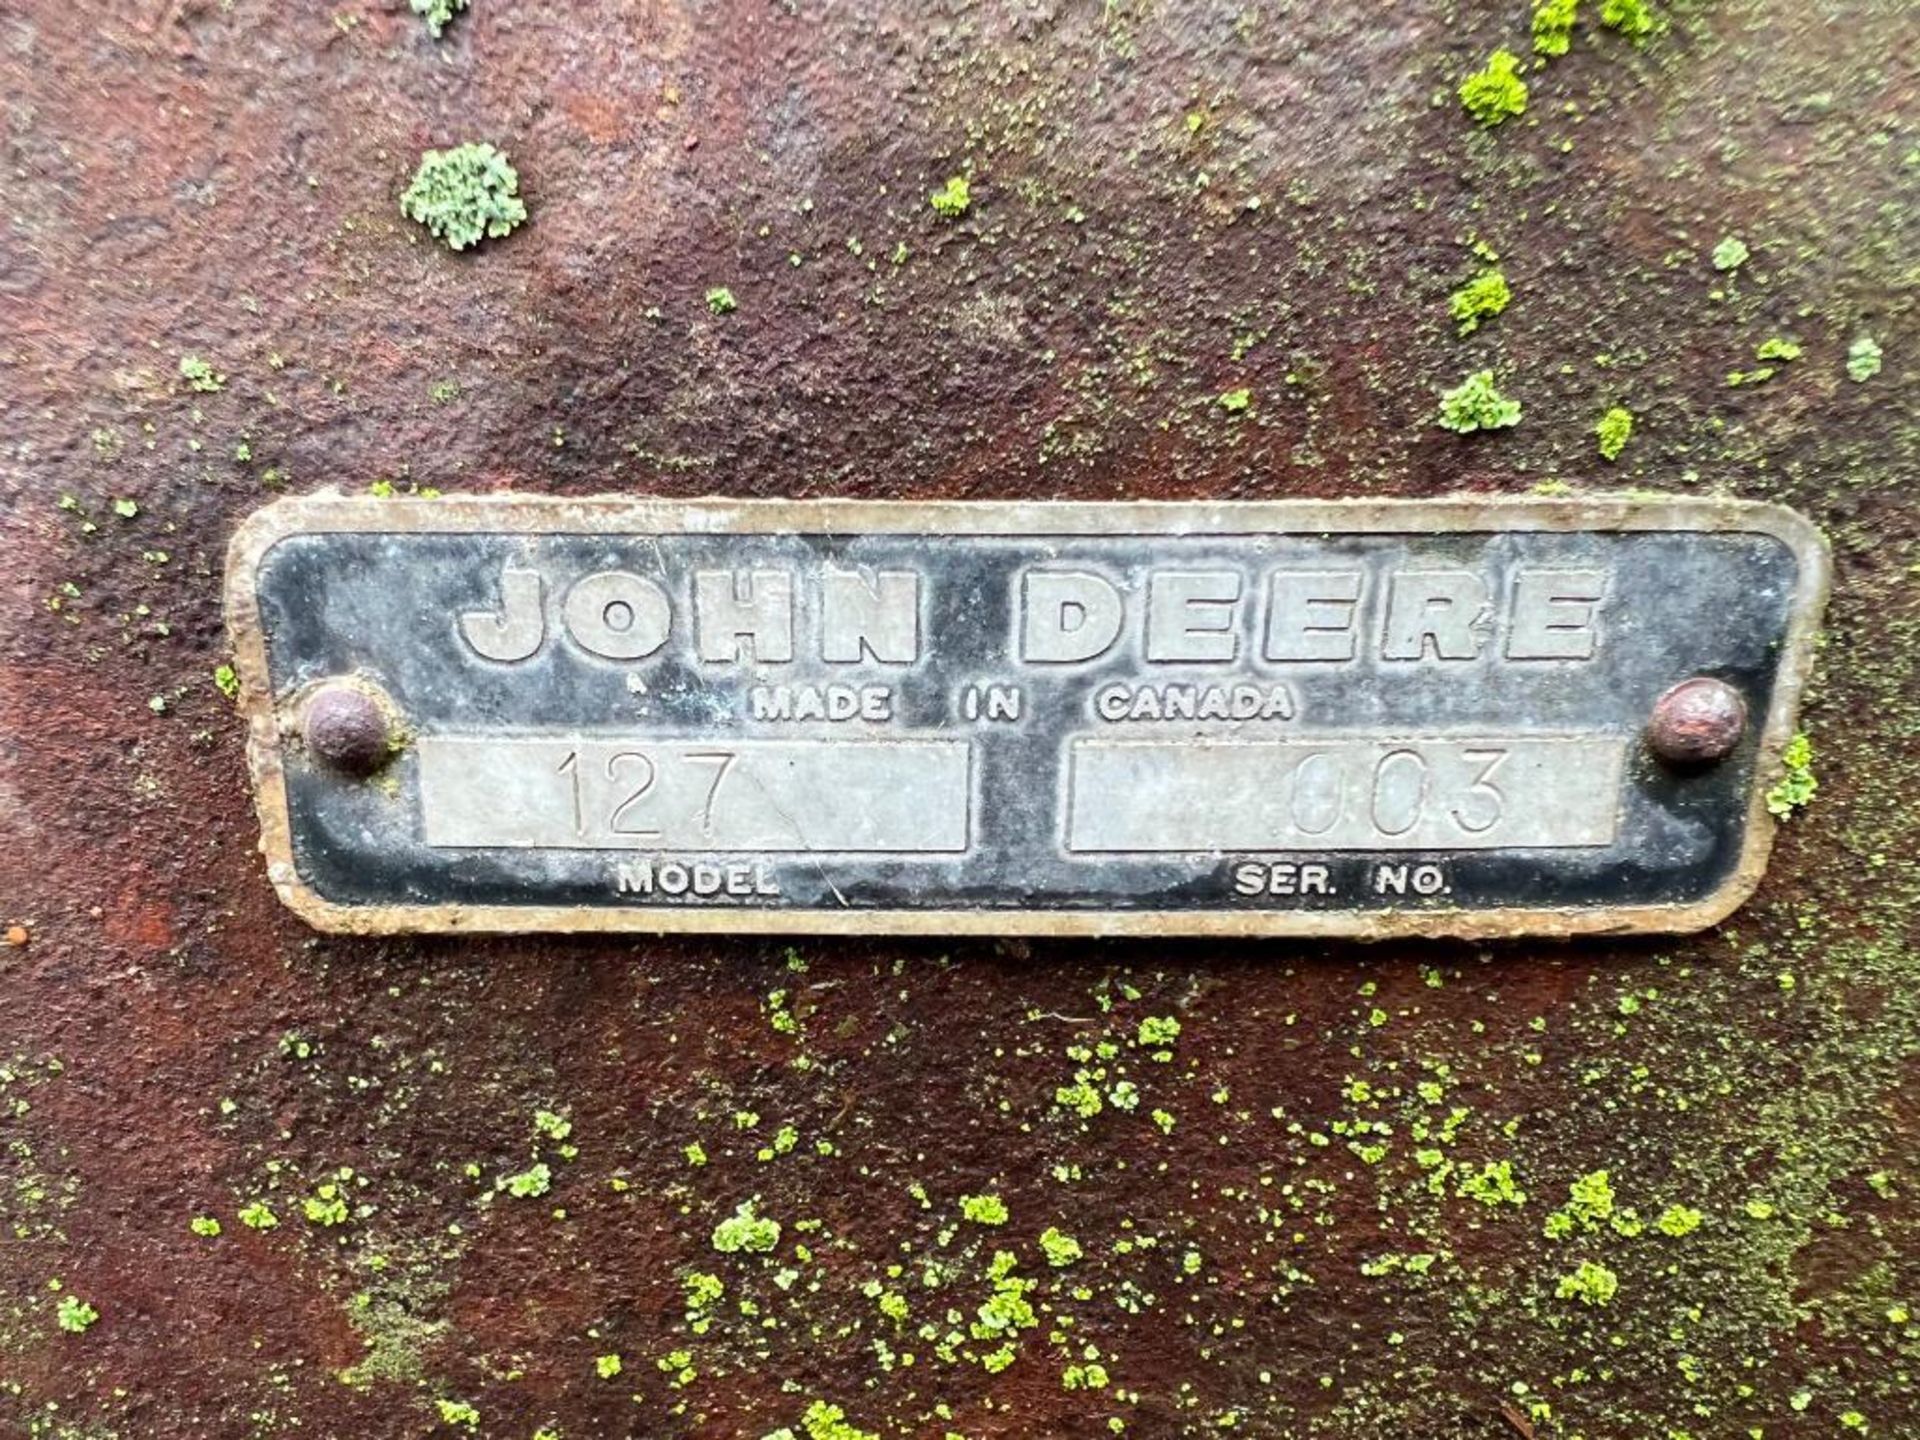 5' John Deere Brush Mower, Model #127, Serial #003. Located in Mt. Pleasant, IA - Image 6 of 6